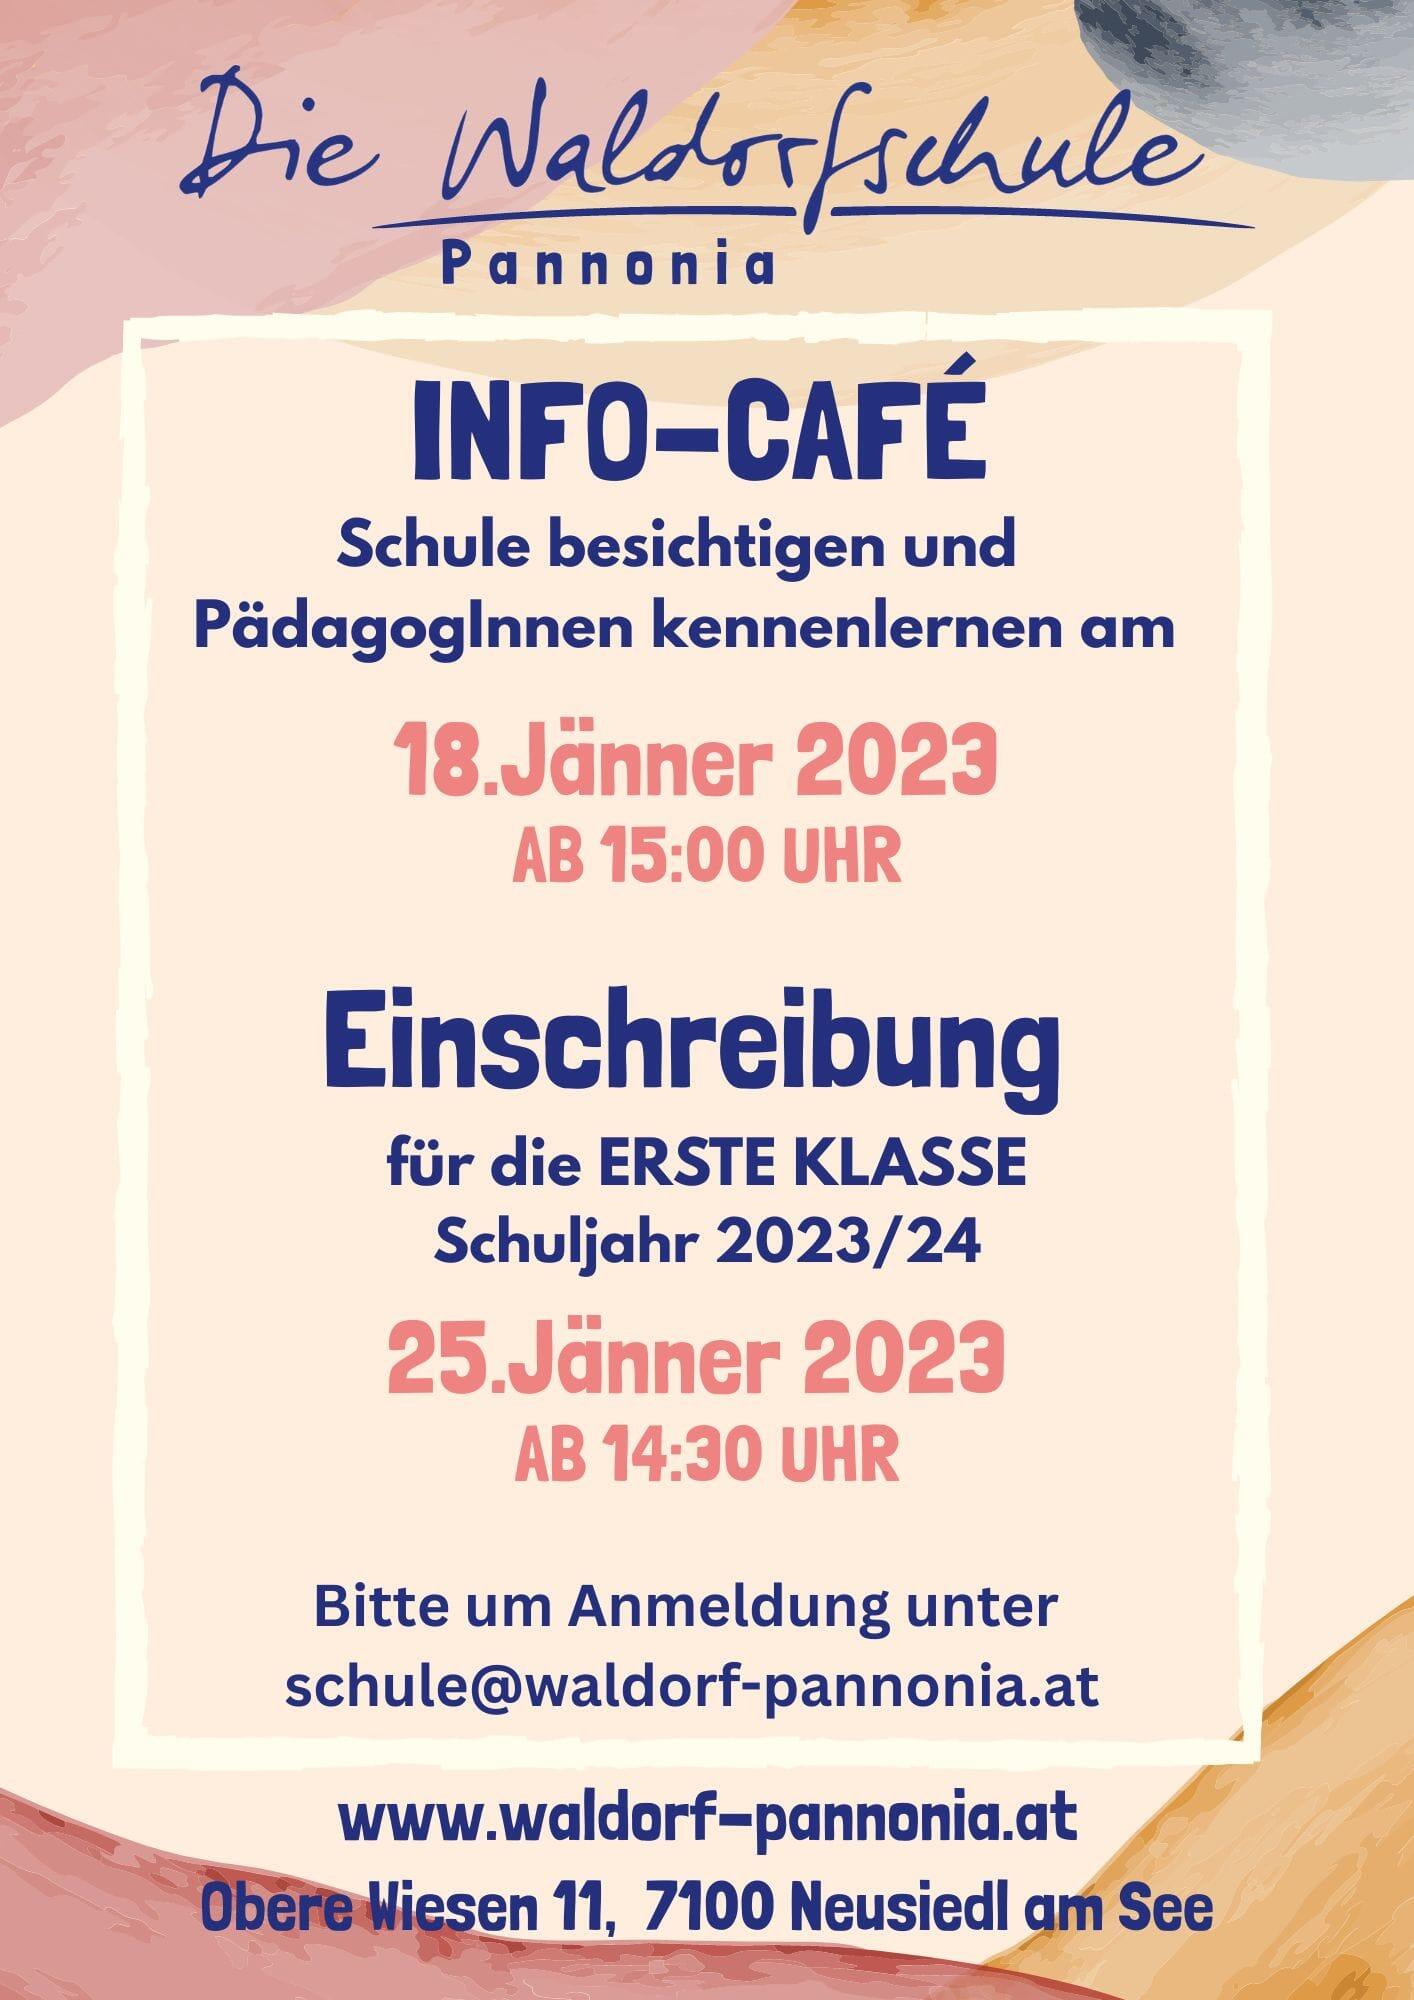 18.01.2023 Info-Cafè (Schulbesichtigung und Kennenlernen); Einschreibung für die Erste Klasse Schuljahr 2023/24 am 25.01.2023 ab 14:30 Uhr